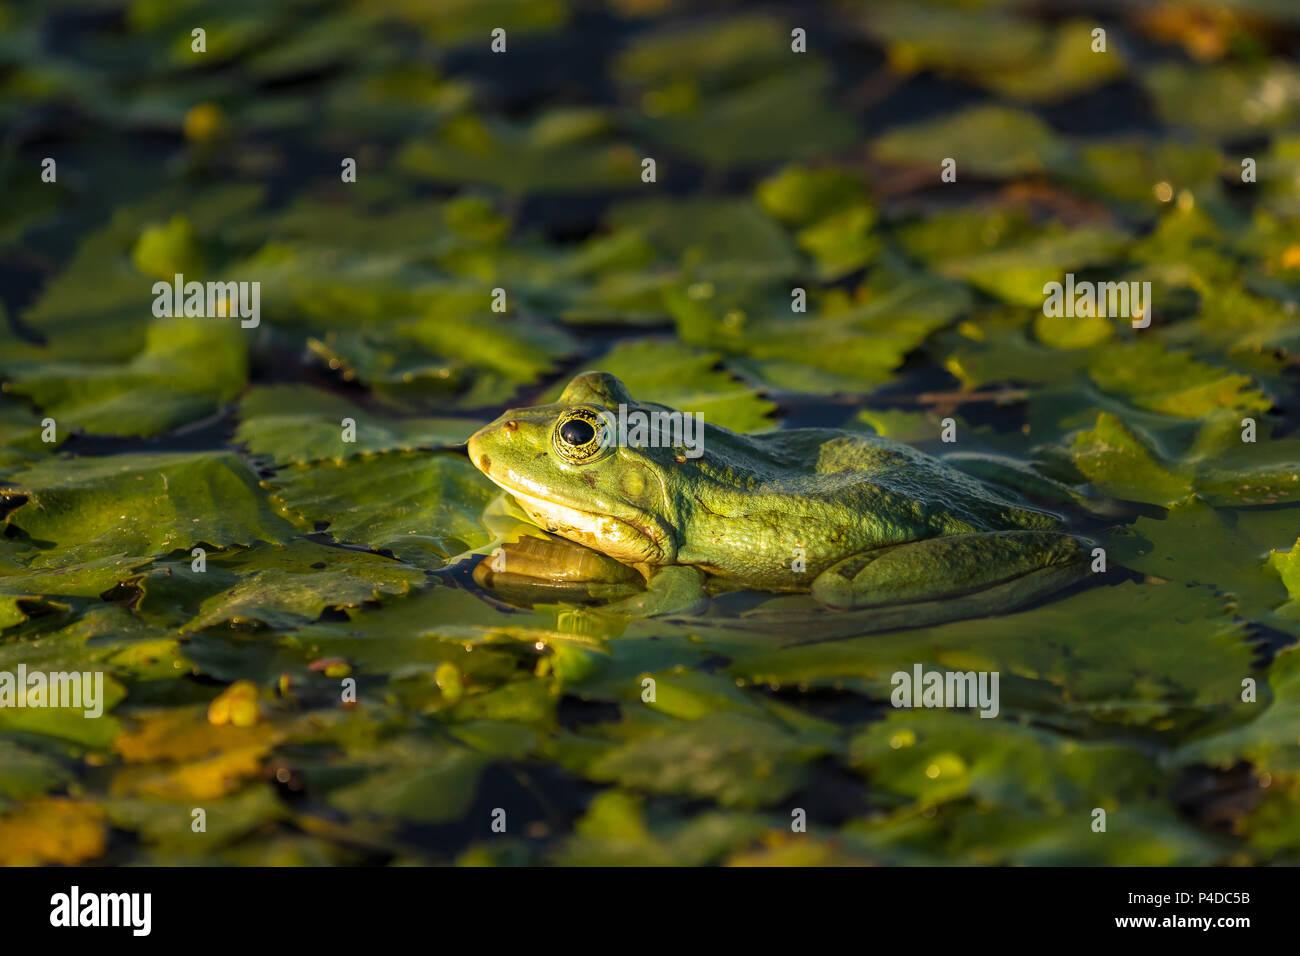 Die gemeinsame Green Frog (See Frosch oder Wasser Frosch) im Wasser in das Donau Delta. Closeup Frosch Fotografie bei Sonnenaufgang Stockfoto